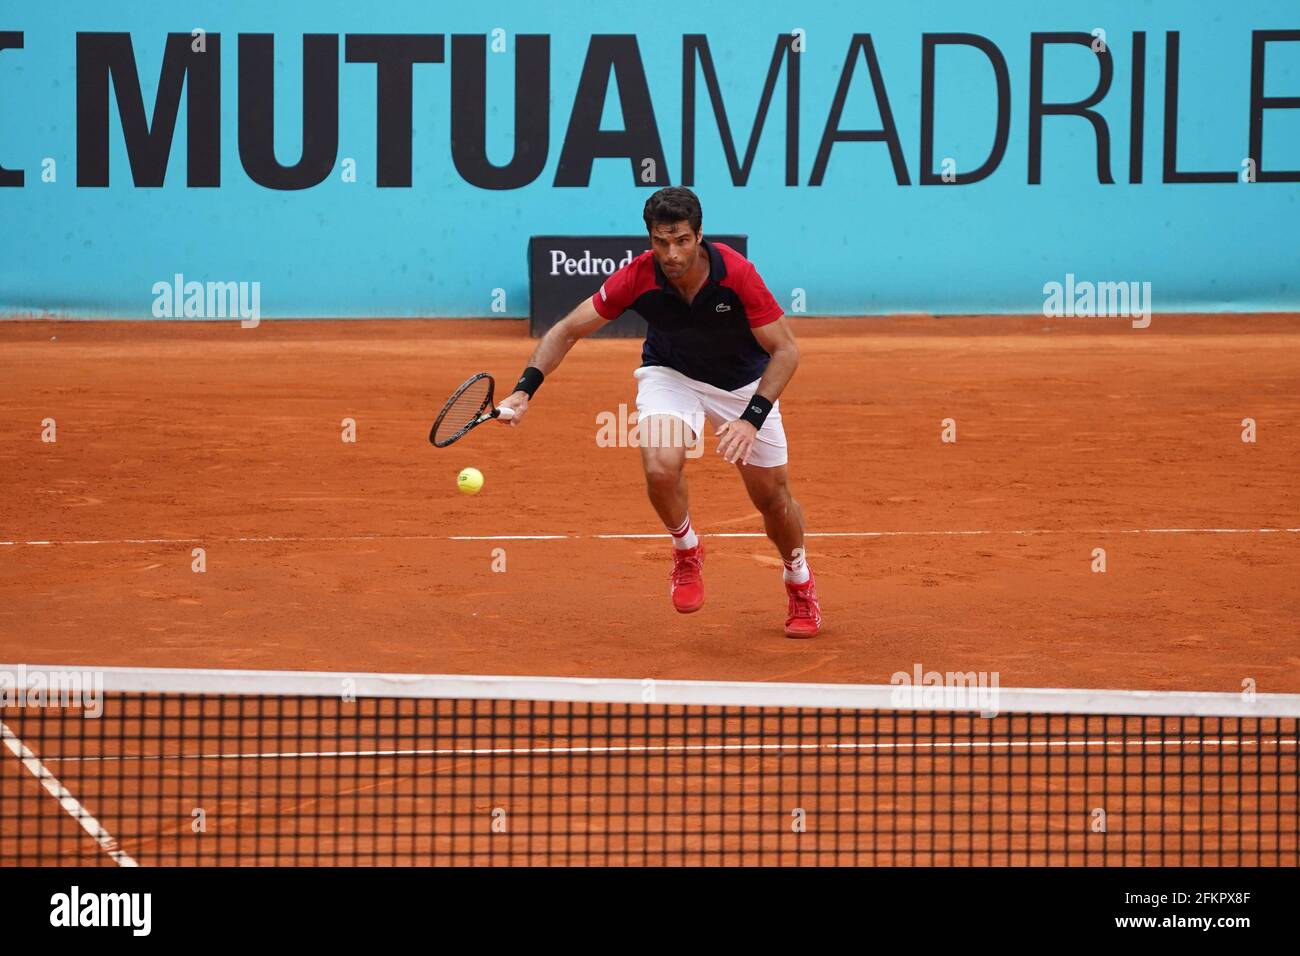 Madrid, Espagne. 03ème mai 2021. Pablo Andujar (SPA) contre Marcos Giron (US) lors de la session de lundi à l'ouverture de tennis de Mutua Madrid, Madrid 3 mai 2021 crédit: CORDIN PRESS/Alay Live News Banque D'Images